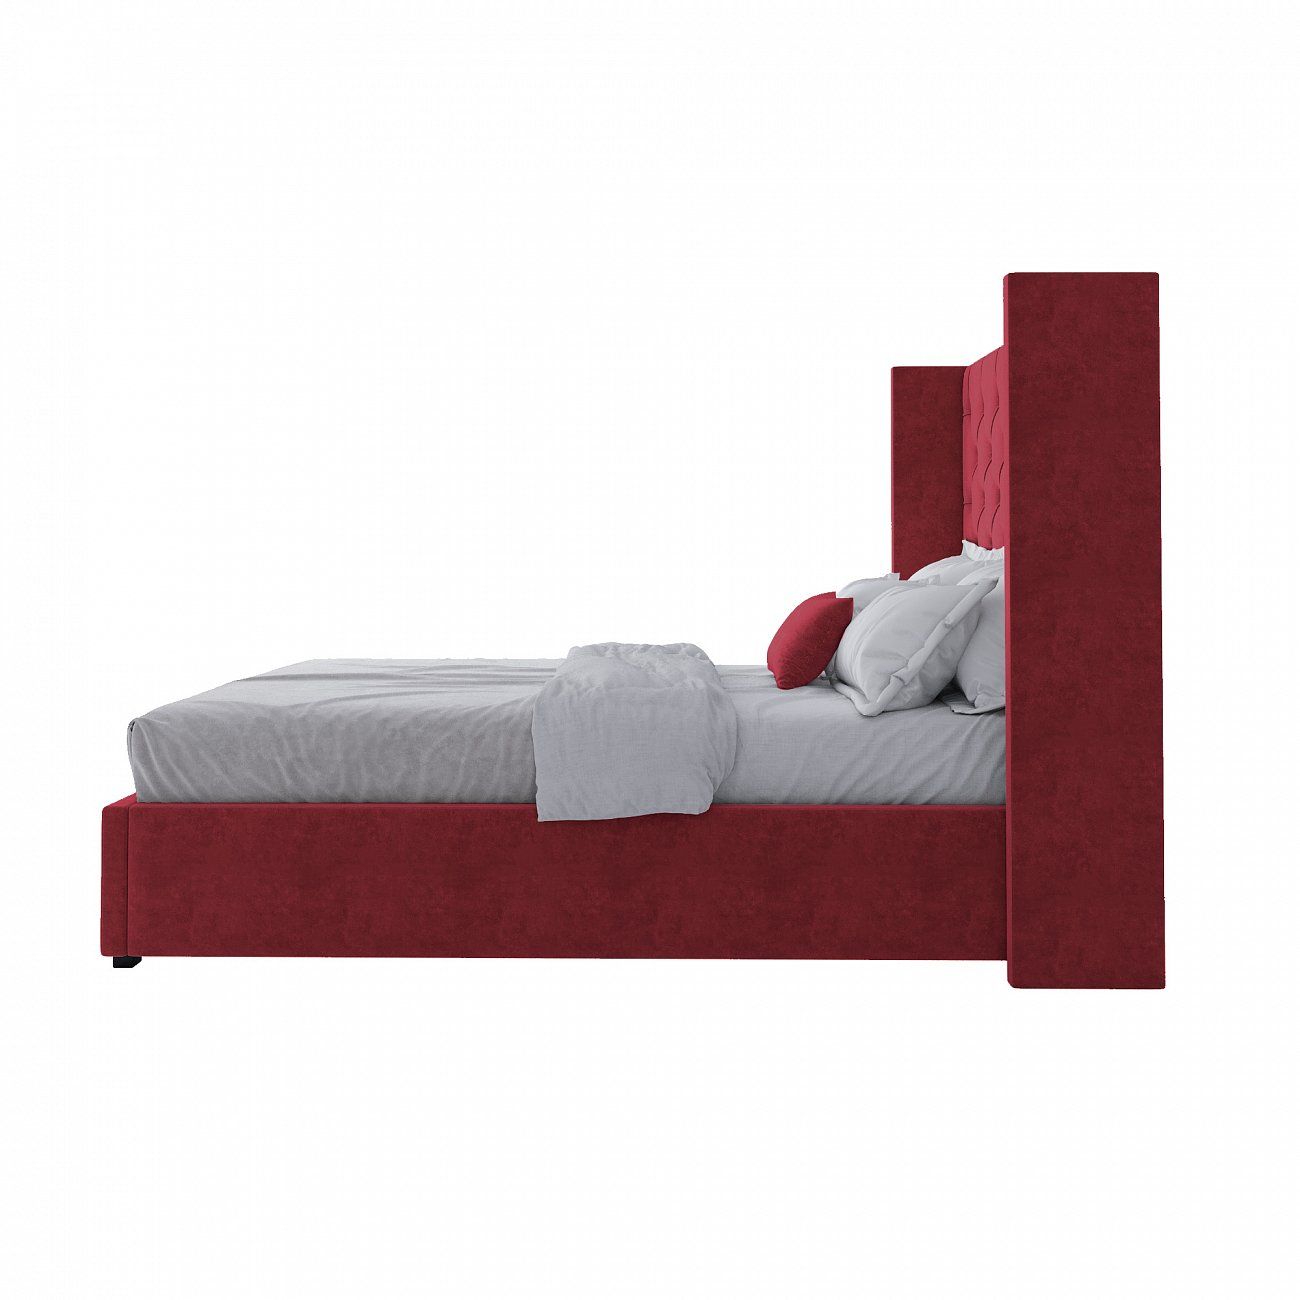 Кровать подростковая 140х200 см красная с каретной стяжкой без гвоздиков Wing-2